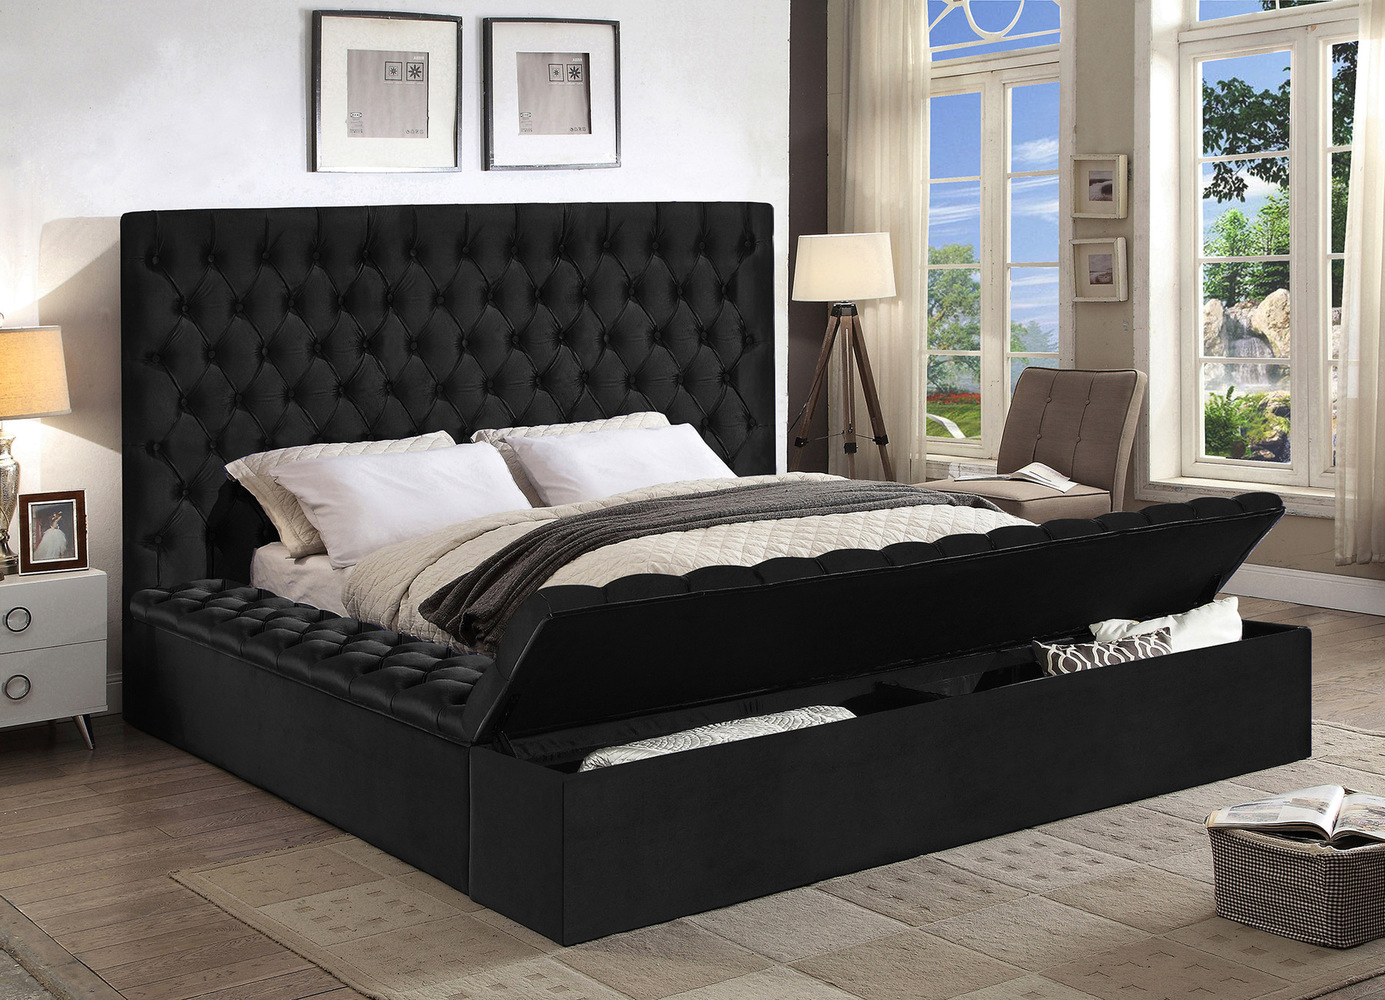 Кровати темного цвета. Черная кровать Кинг сайз. Кровать хофф черная. Кровать Квин сайз. Современные кровати Кинг сайз.